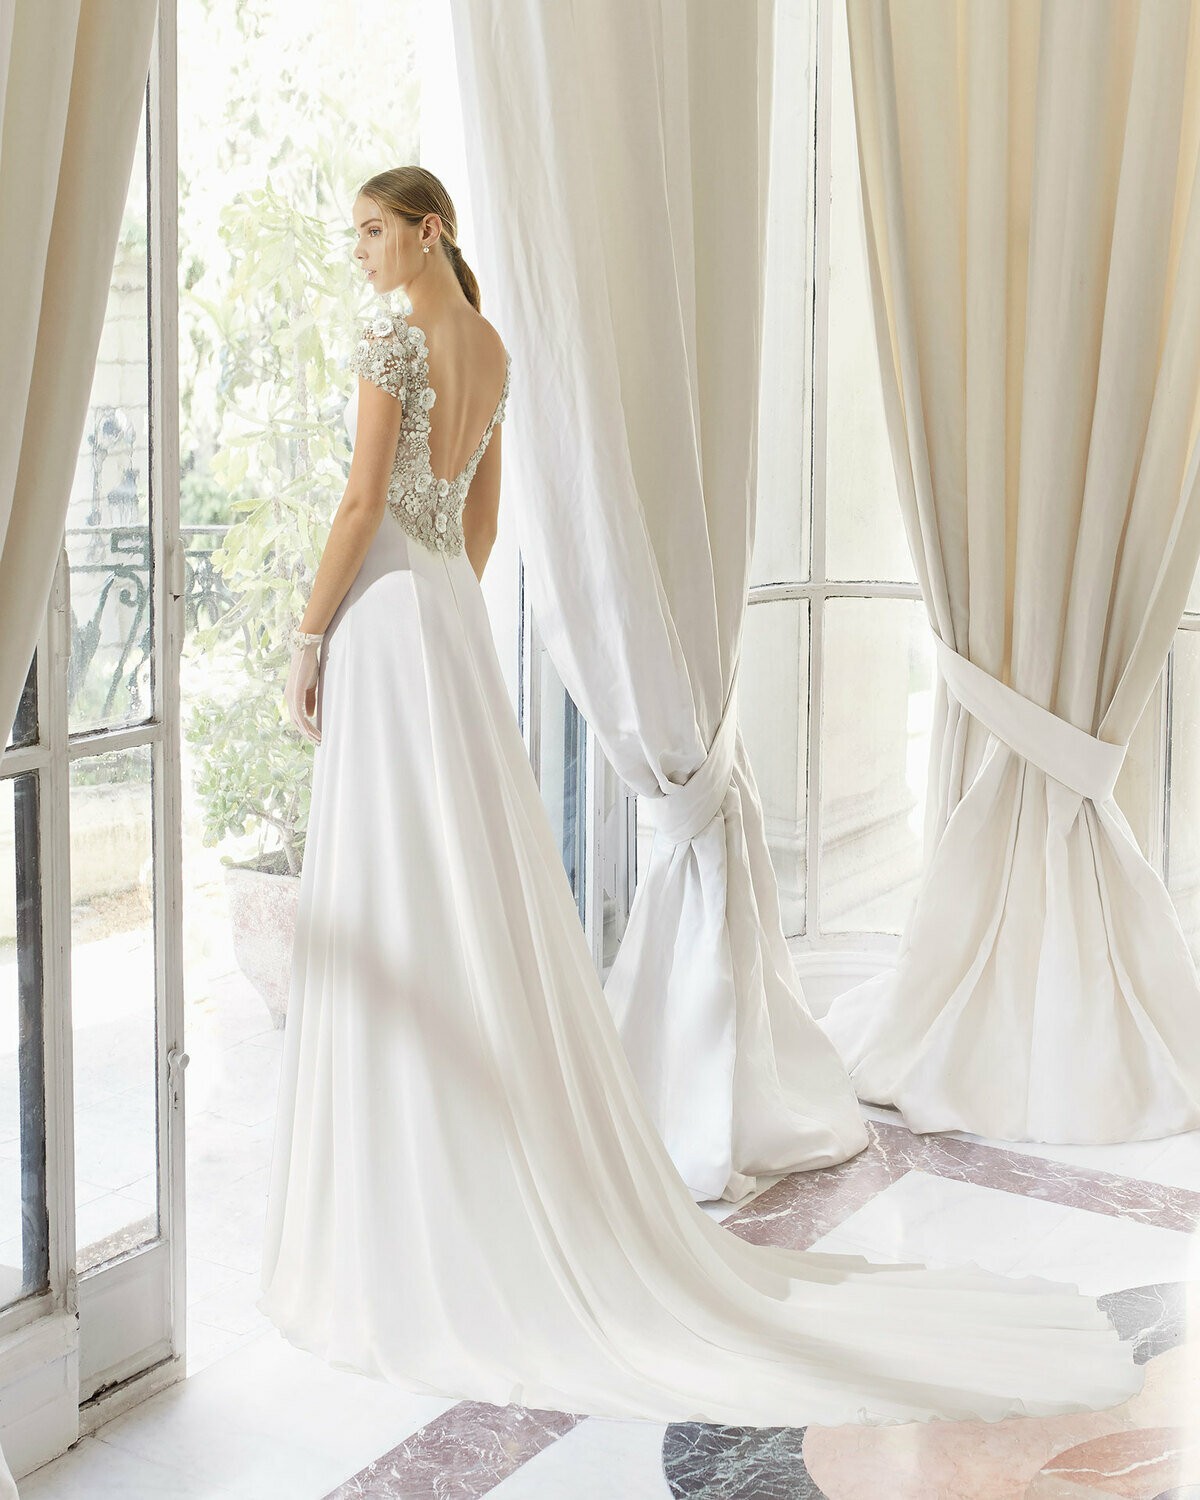 PASION - abito da sposa collezione 2020 - Rosa Clarà Couture